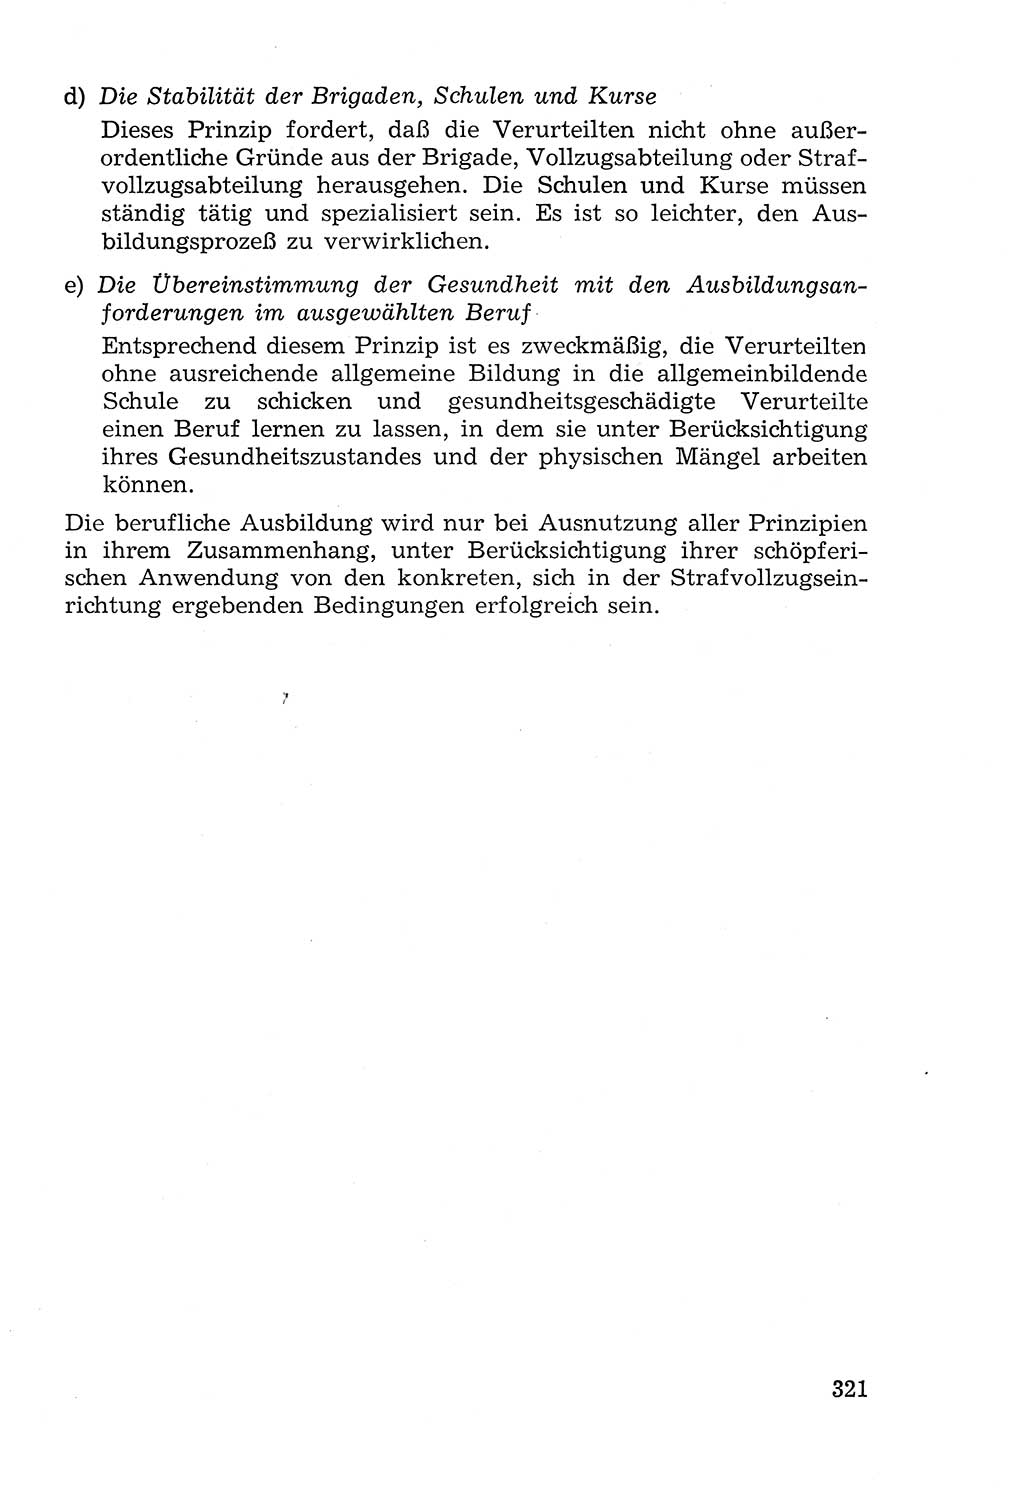 Lehrbuch der Strafvollzugspädagogik [Deutsche Demokratische Republik (DDR)] 1969, Seite 321 (Lb. SV-Pd. DDR 1969, S. 321)